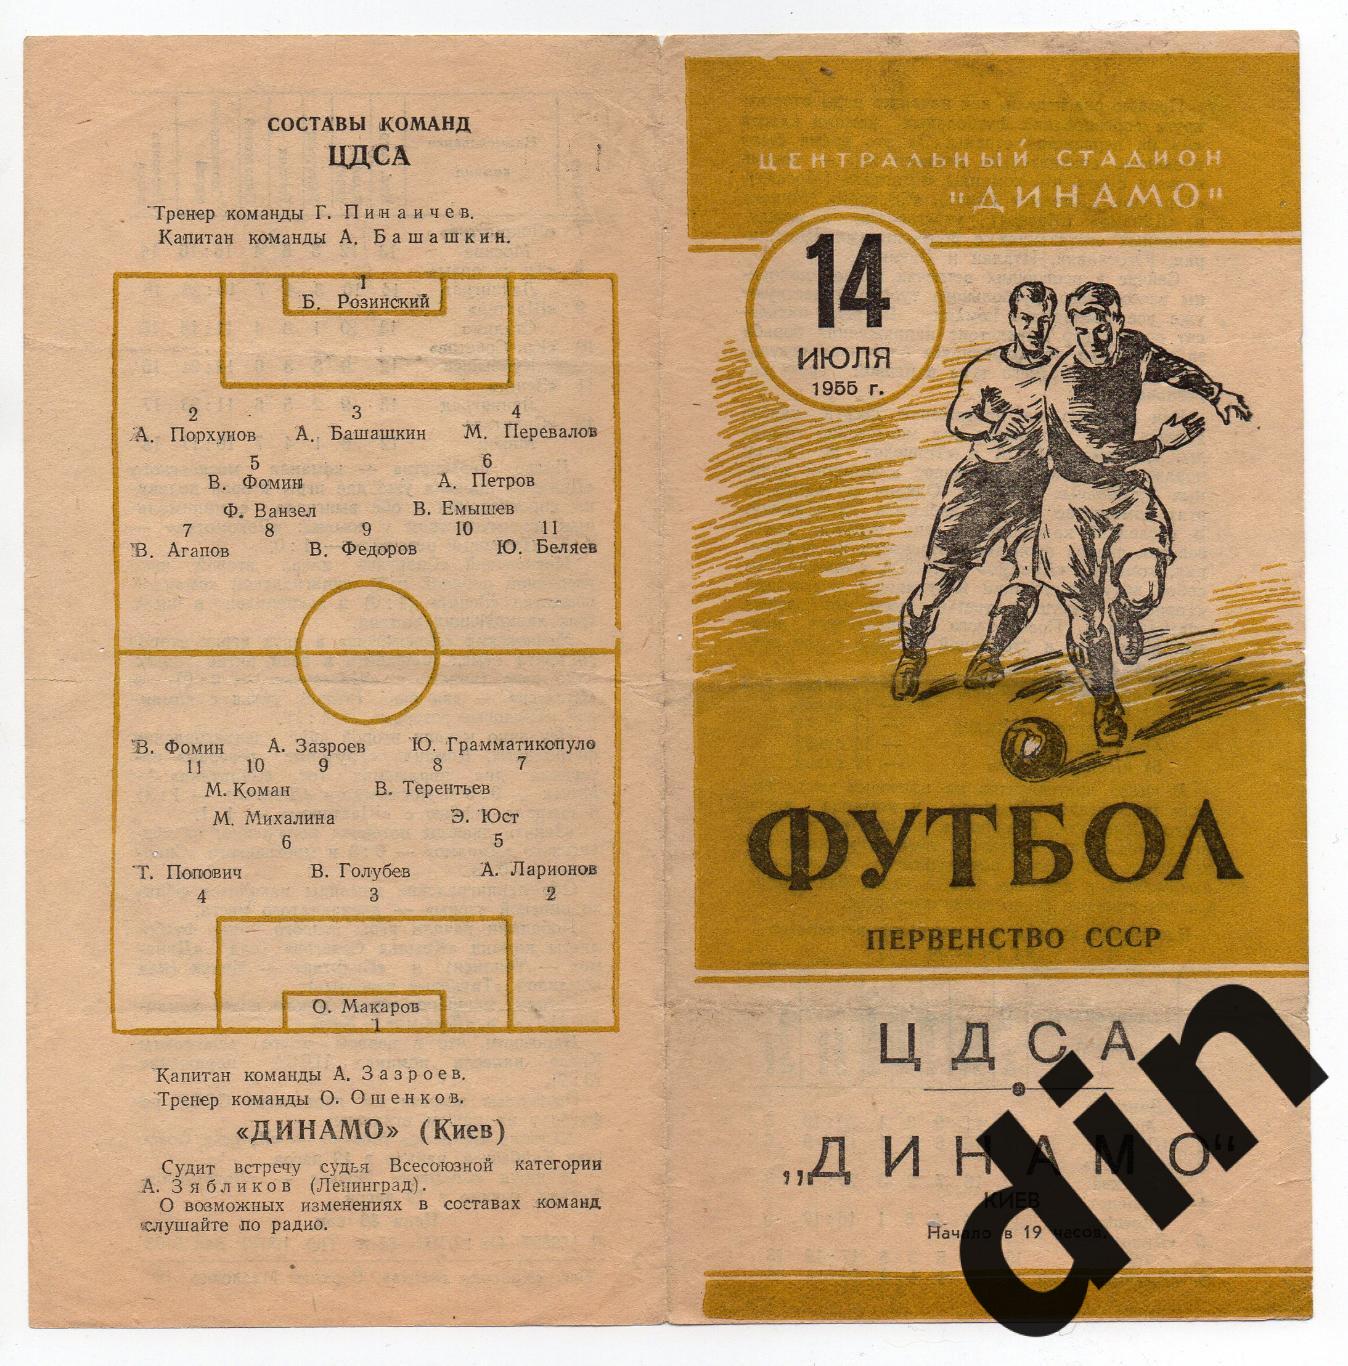 ЦДСА (ЦСКА) Москва - Динамо Киев 14.07.1955